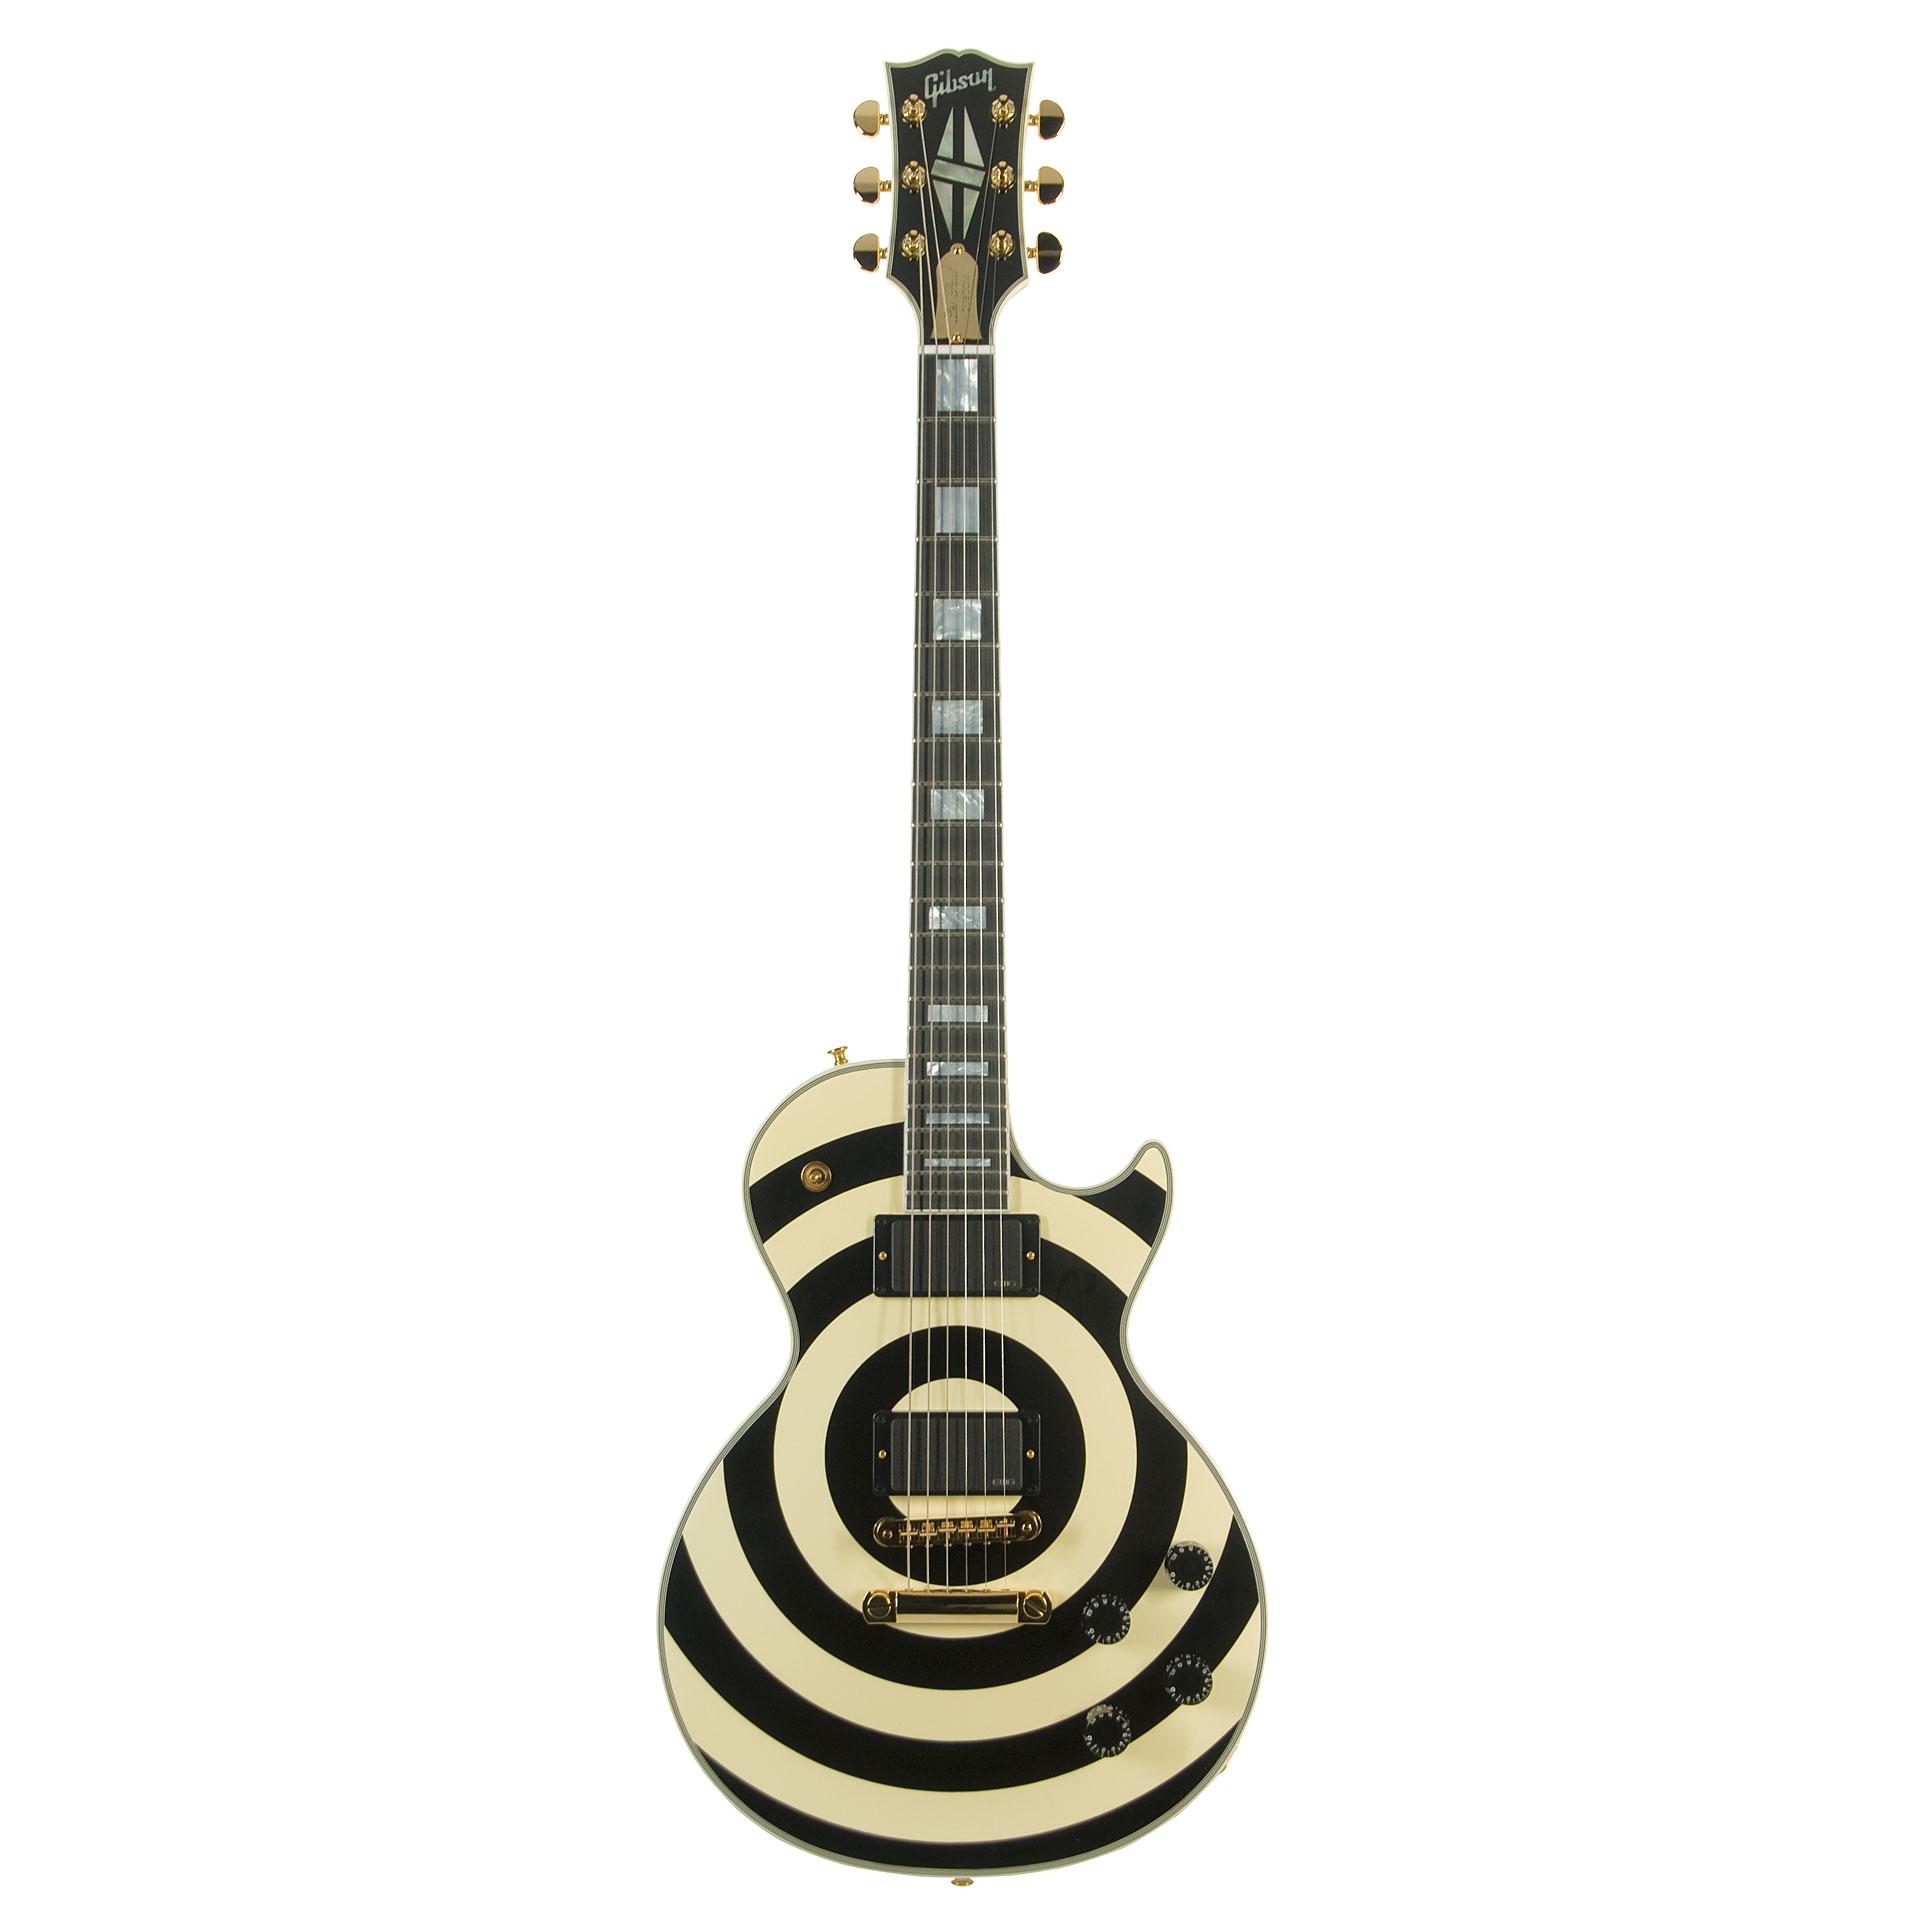 Foto Gibson Signature Zakk Wylde Bullseye Les Paul, Guitarra eléctrica foto 196821